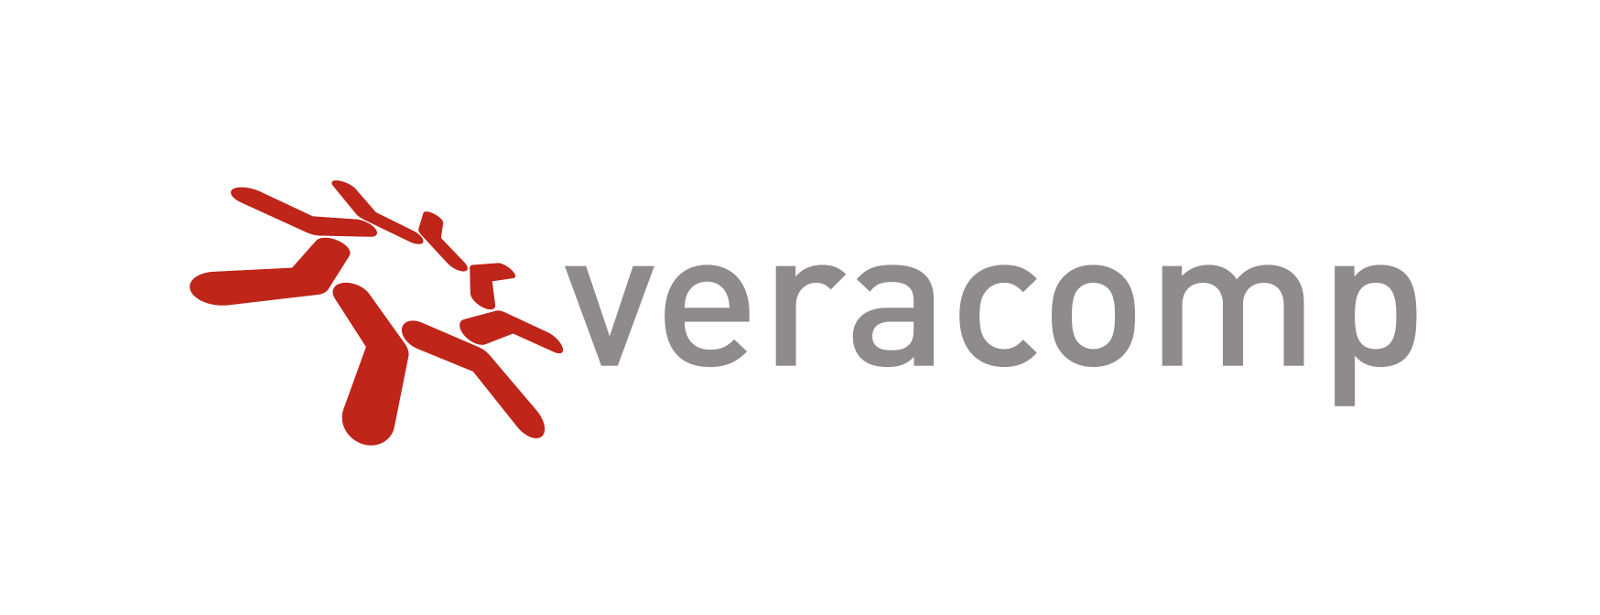 Veracomp: największy wzrost obrotów w historii